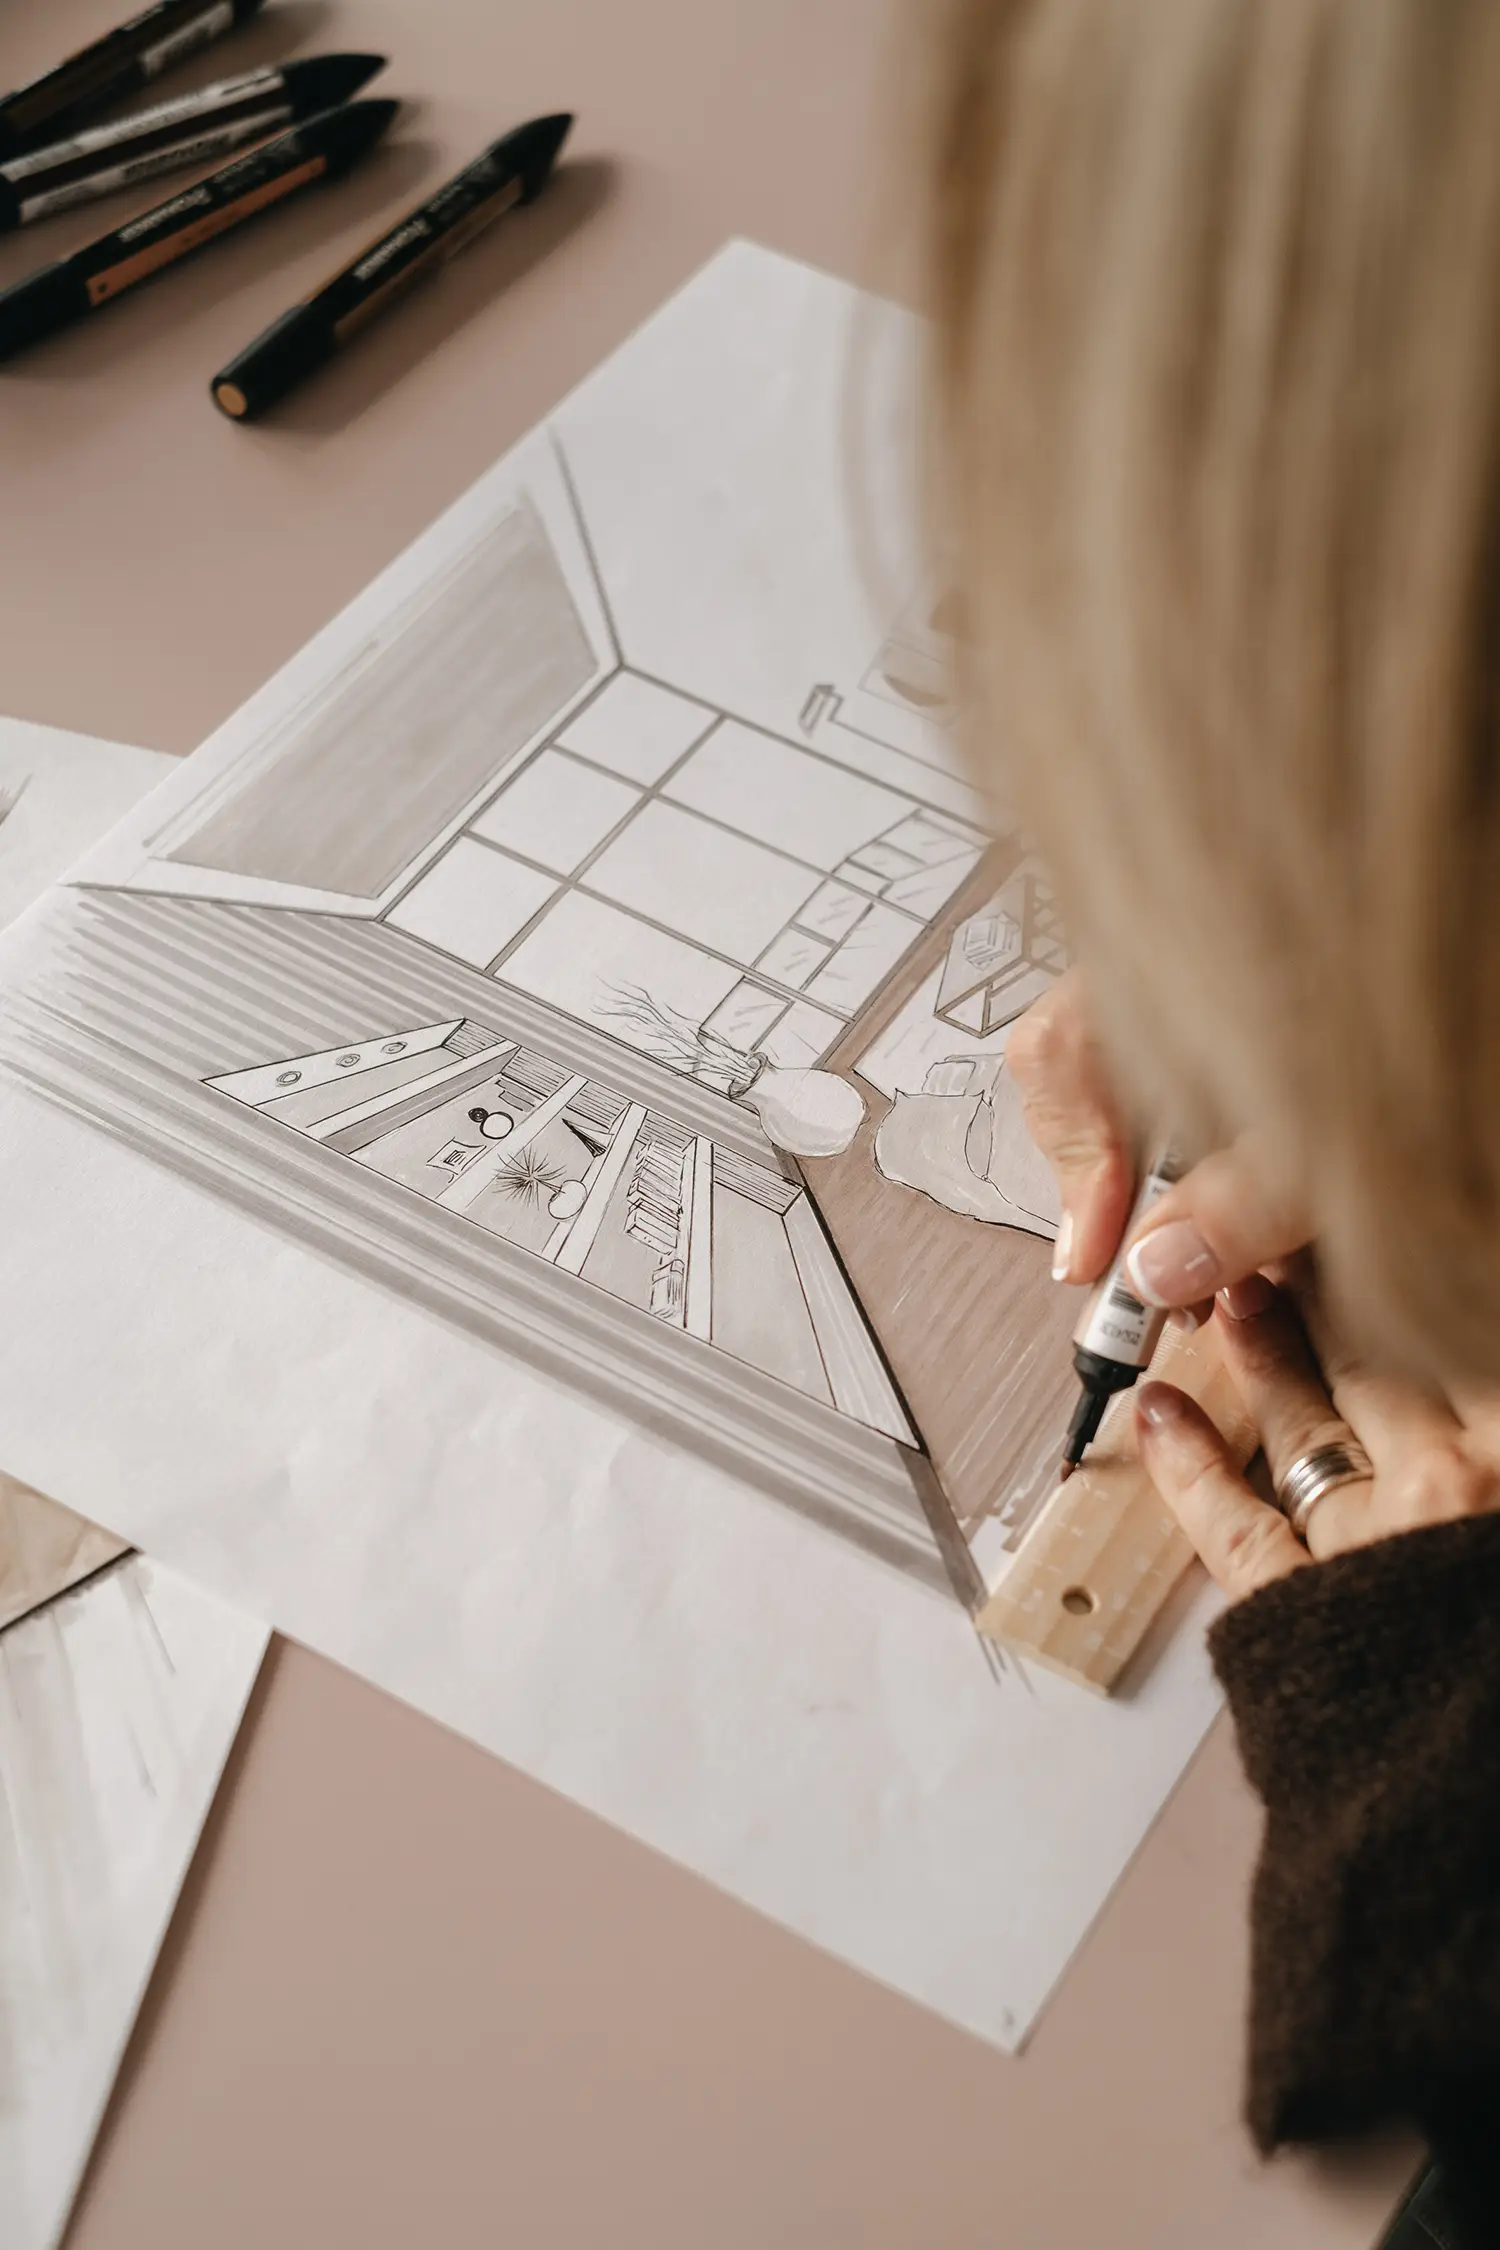 L'architecte d'intérieur Stefania Luraghi, fondatrice du studio Elles Interior Design, travaillant sur le dessin technique d'un projet de rénovation.